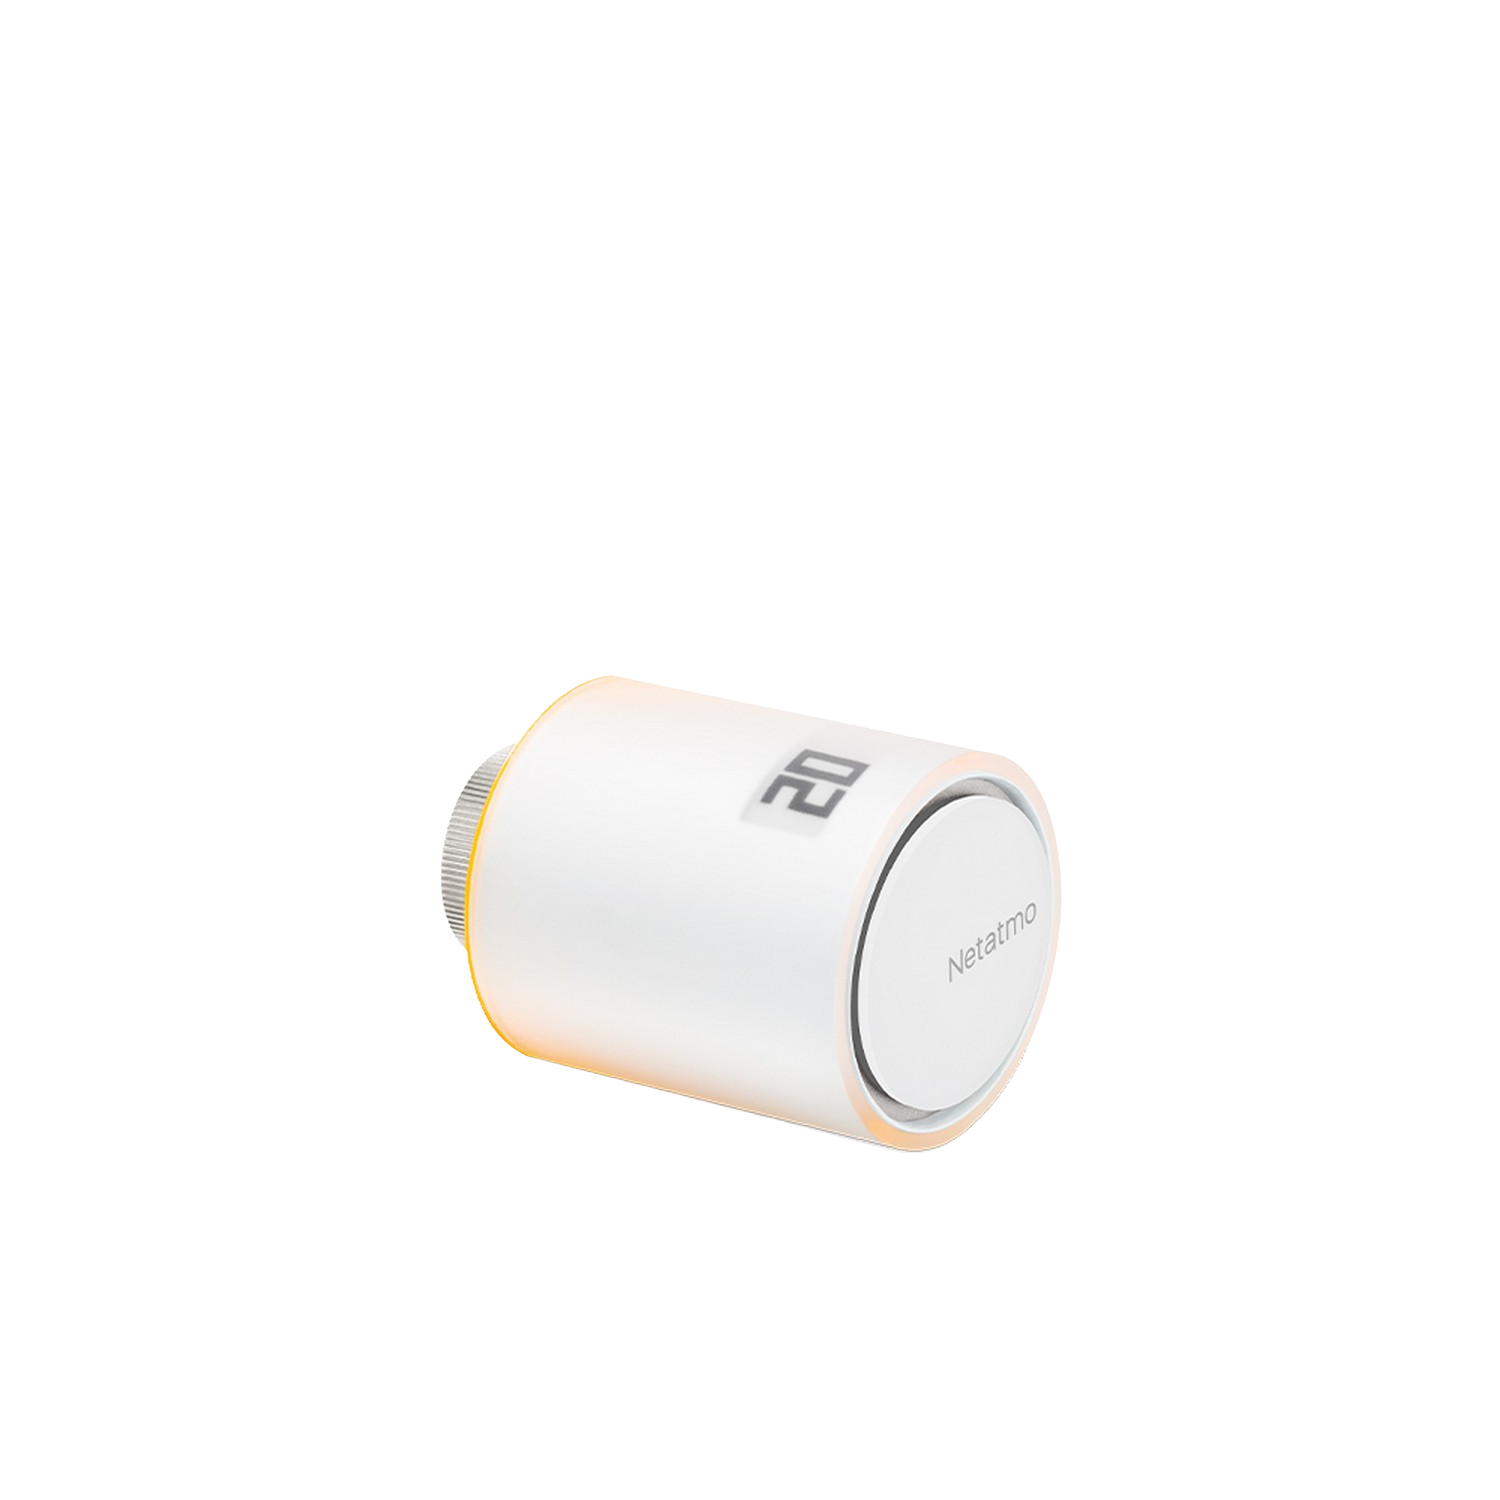 Inteligente Adicional Para radiador netatmo by starck naves accesorio del termostato control remoto app regulación blanco wifi el intelligente y paquete colectiva valvula nav01de